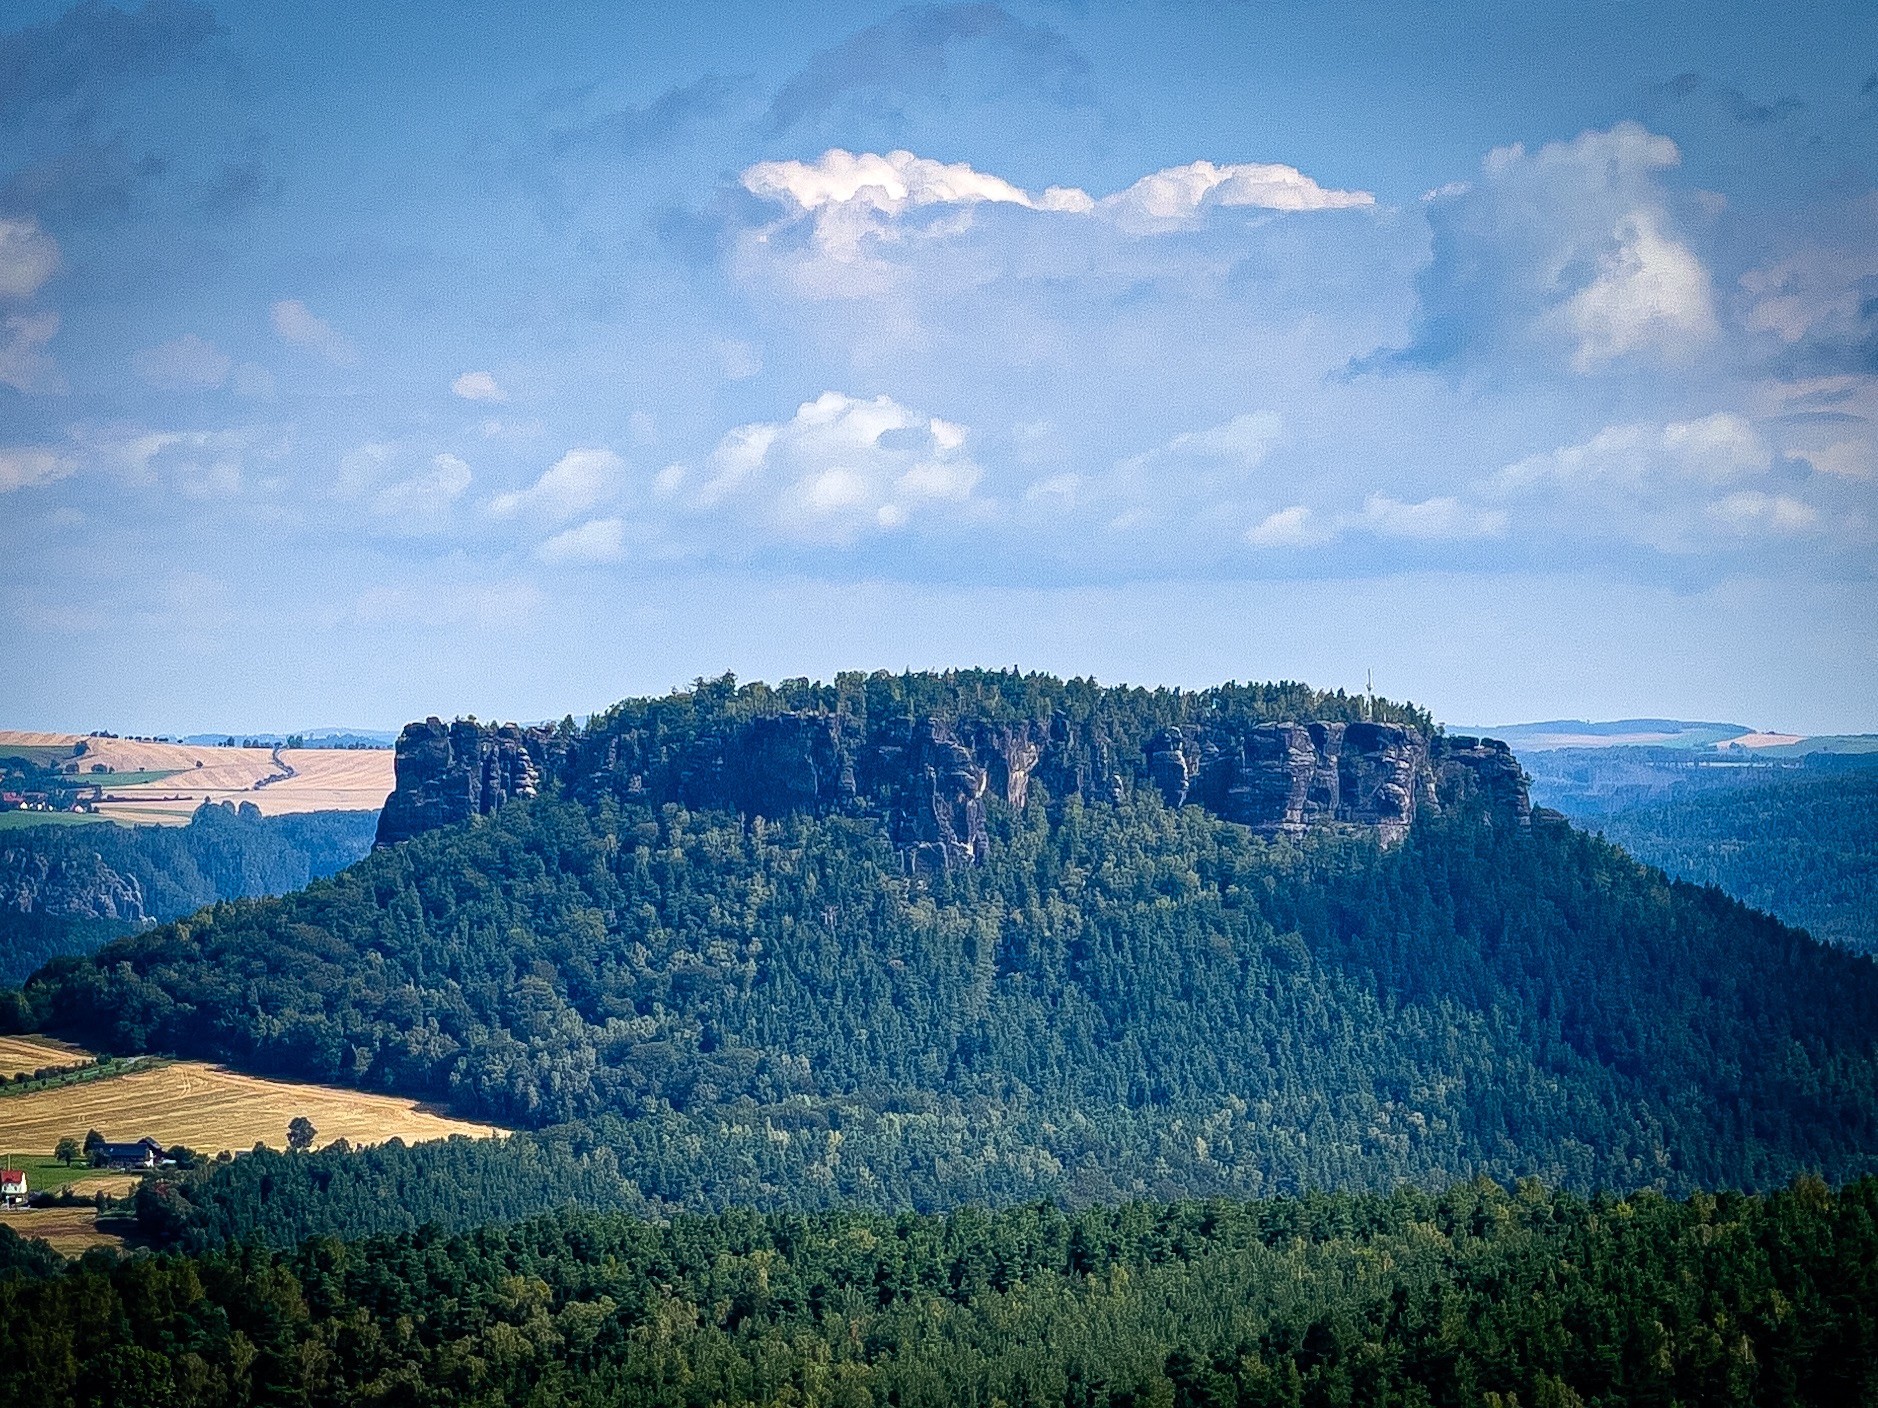 Eine flache Mesa, die mit dichtem grünem Wald bedeckt ist, vor dem Hintergrund von sanften Hügeln und einem Himmel, der mit verstreuten Wolken gefüllt ist.
Es ist der Lilienstein in der sächsischen Schweiz 